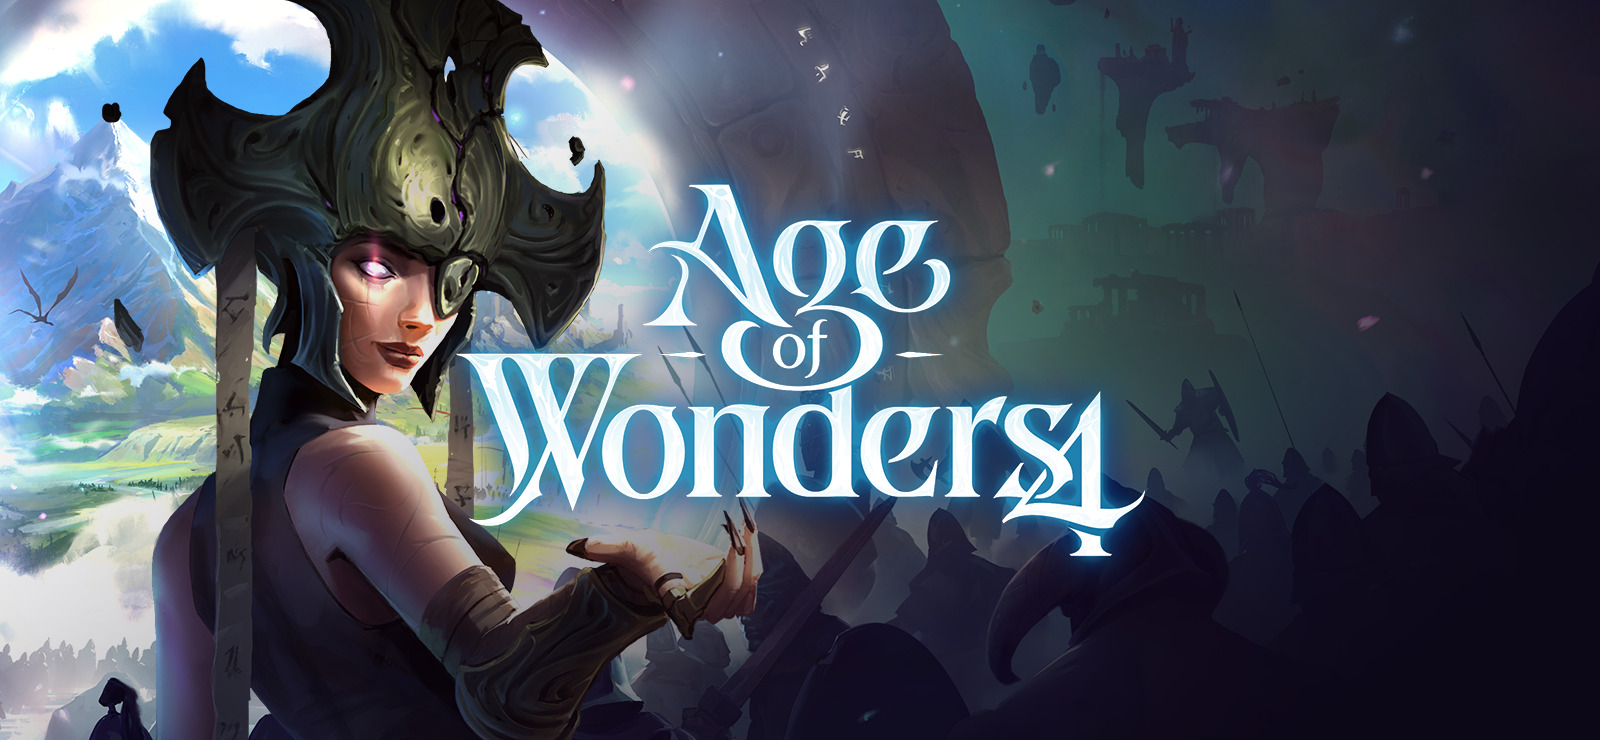 Steam Community :: Age of Wonders 4